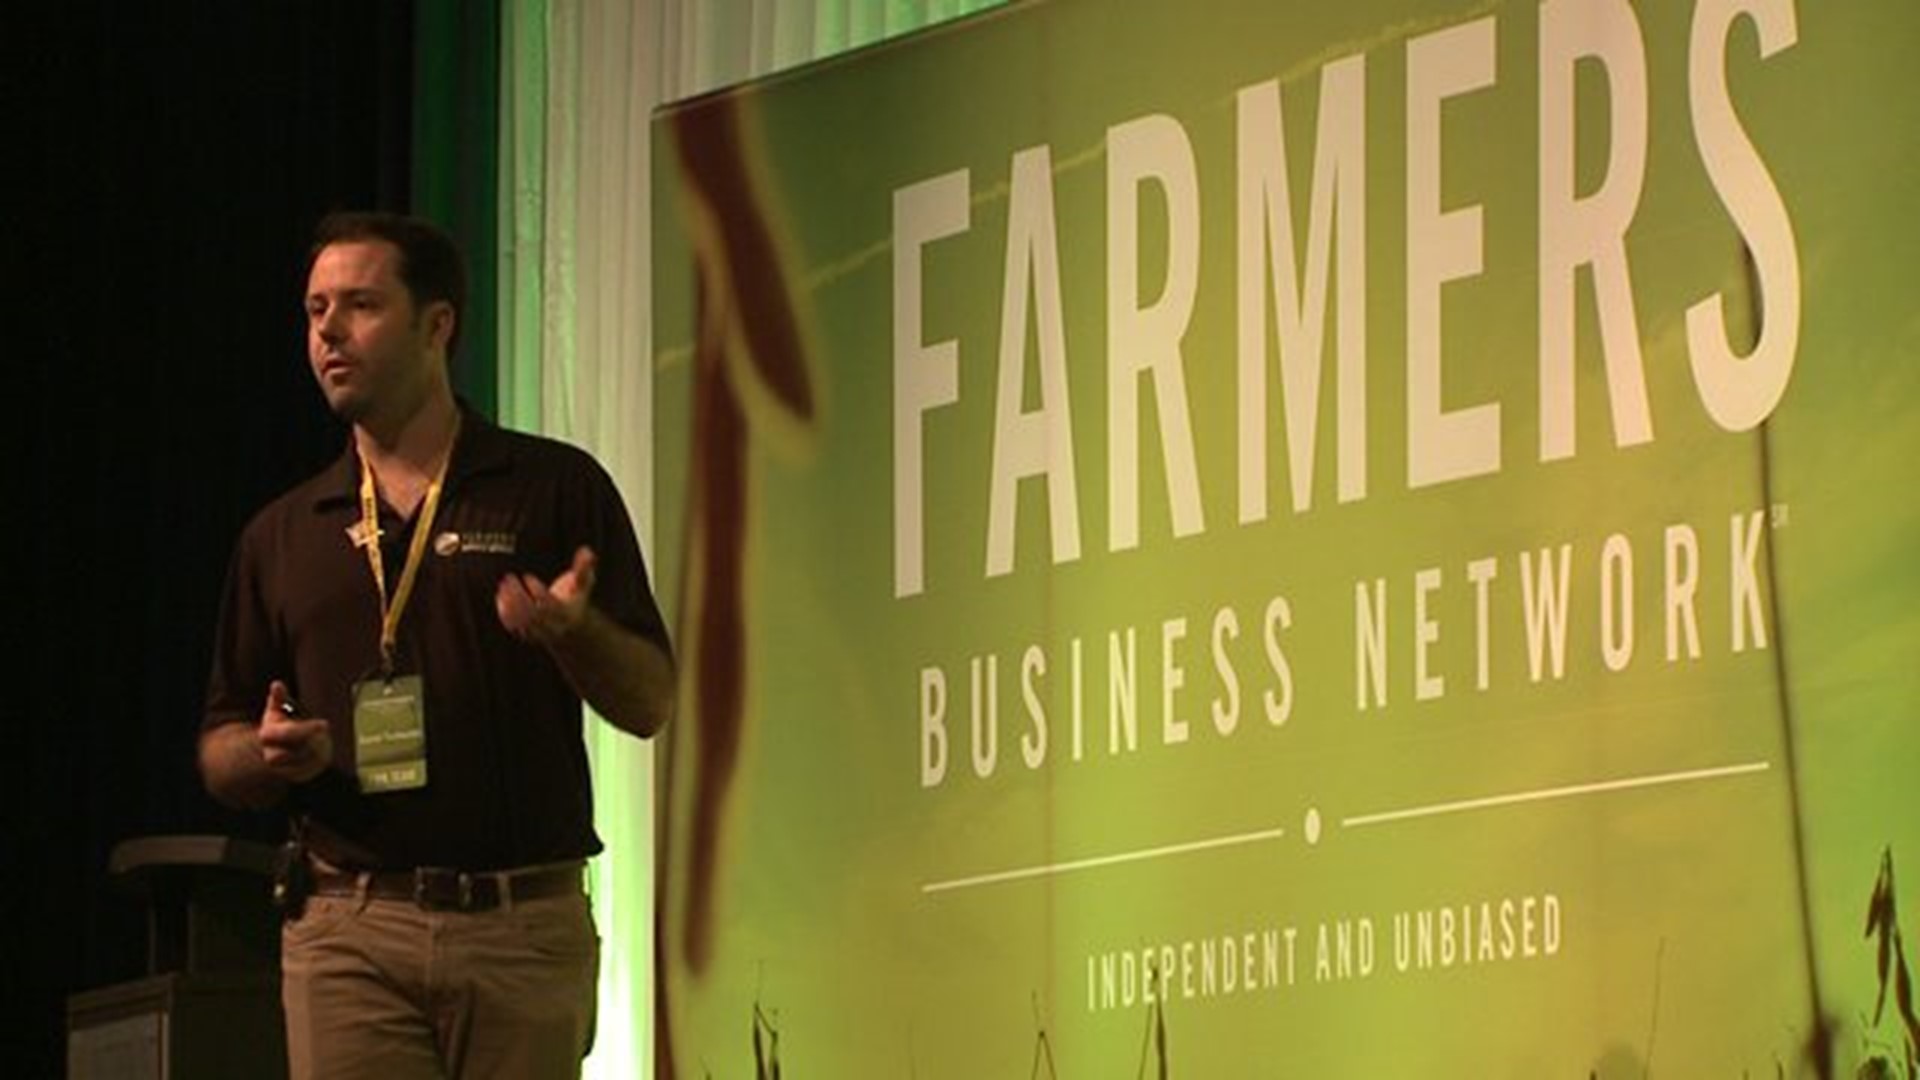 Farmer2Farmer conference comes to Bettendorf